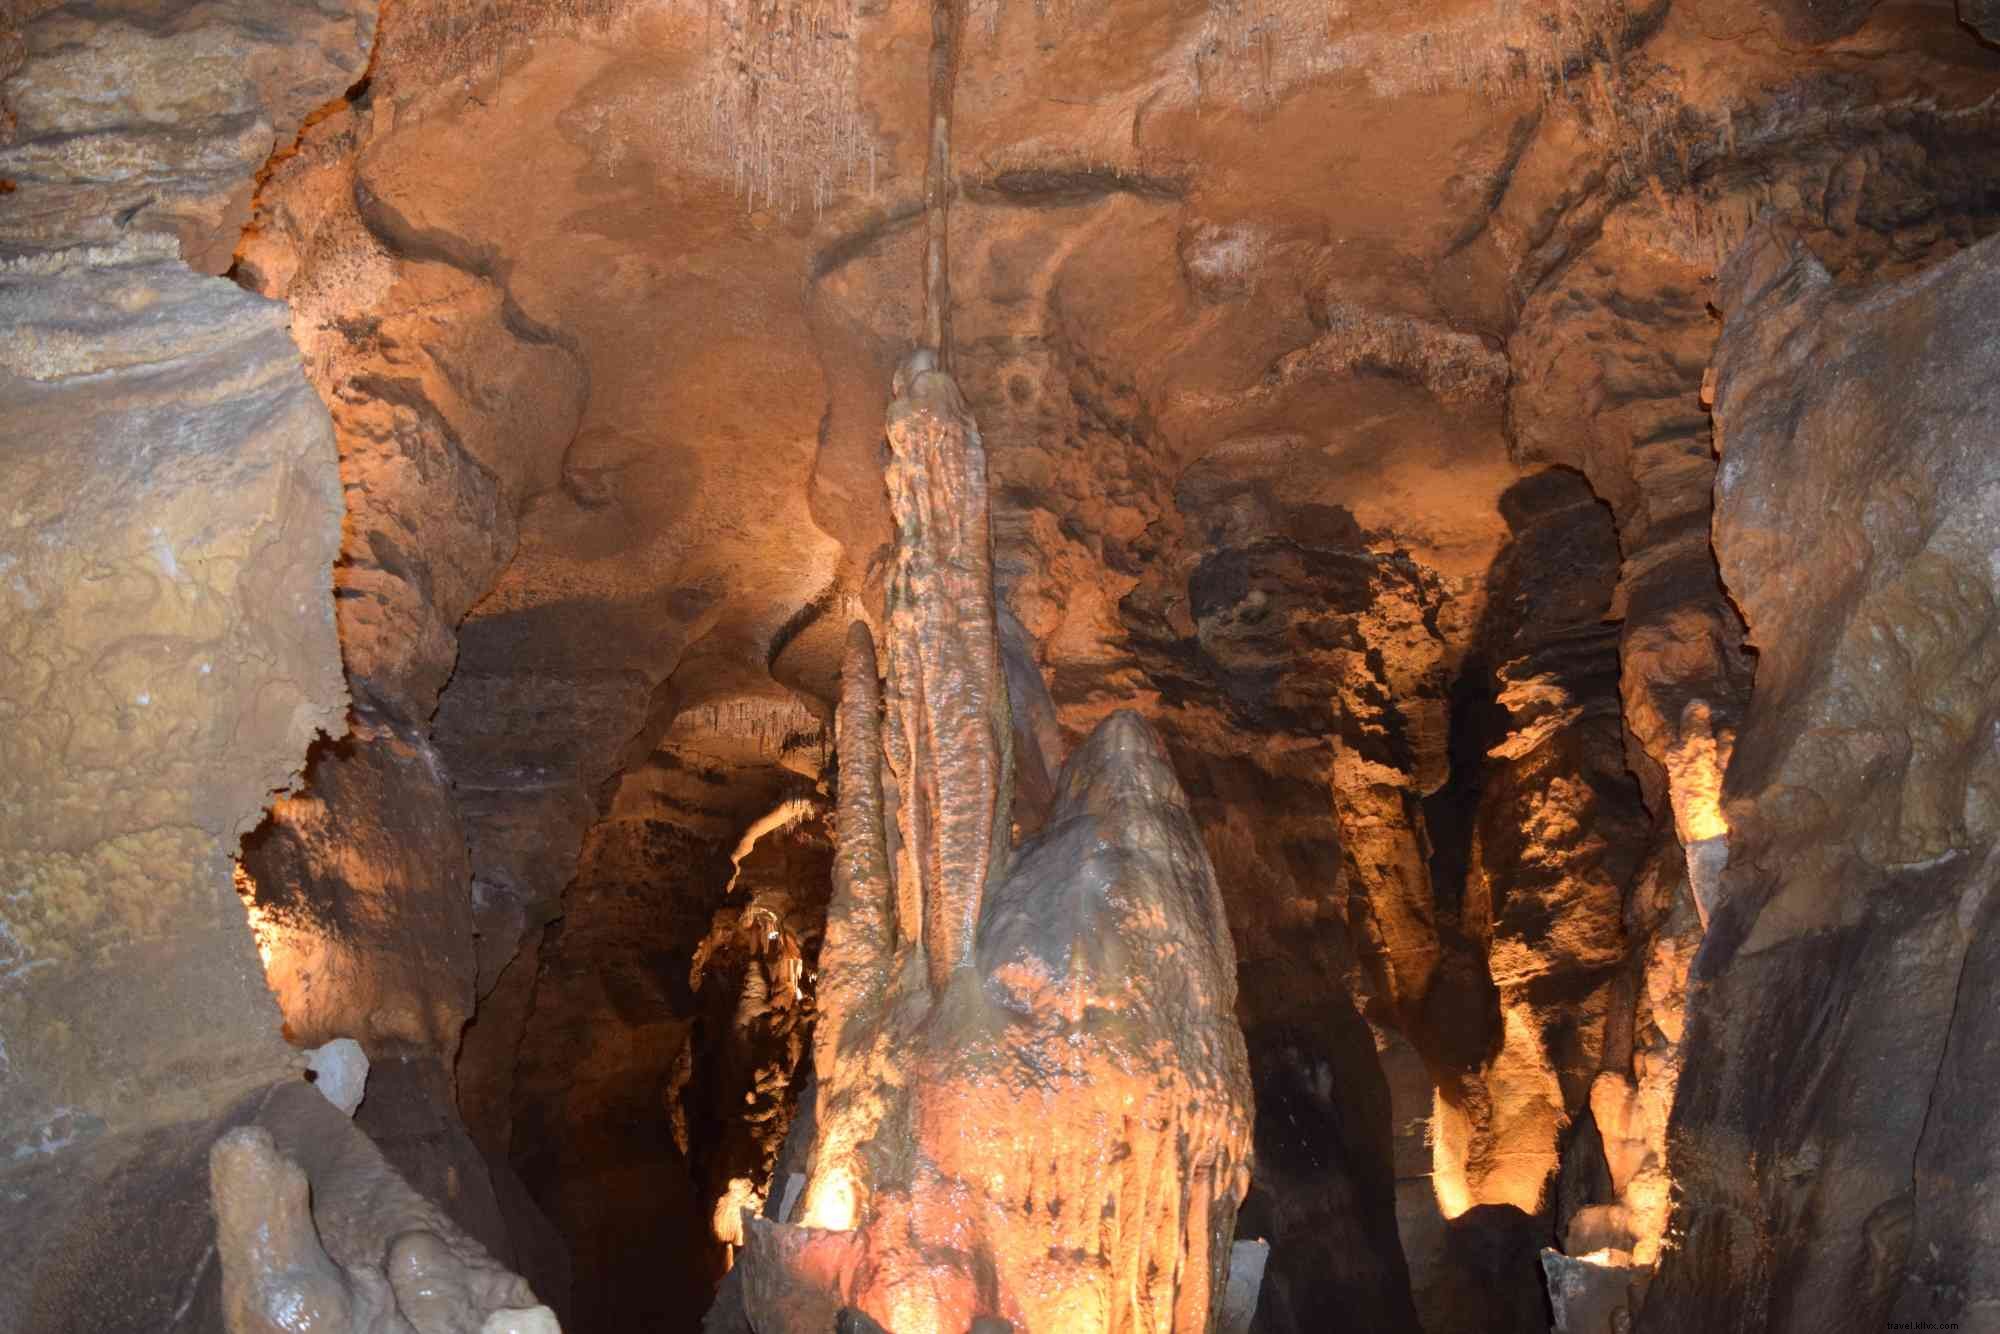 elebrate National Caves &Karst avec Lincoln Caverns &Whisper Rocks 